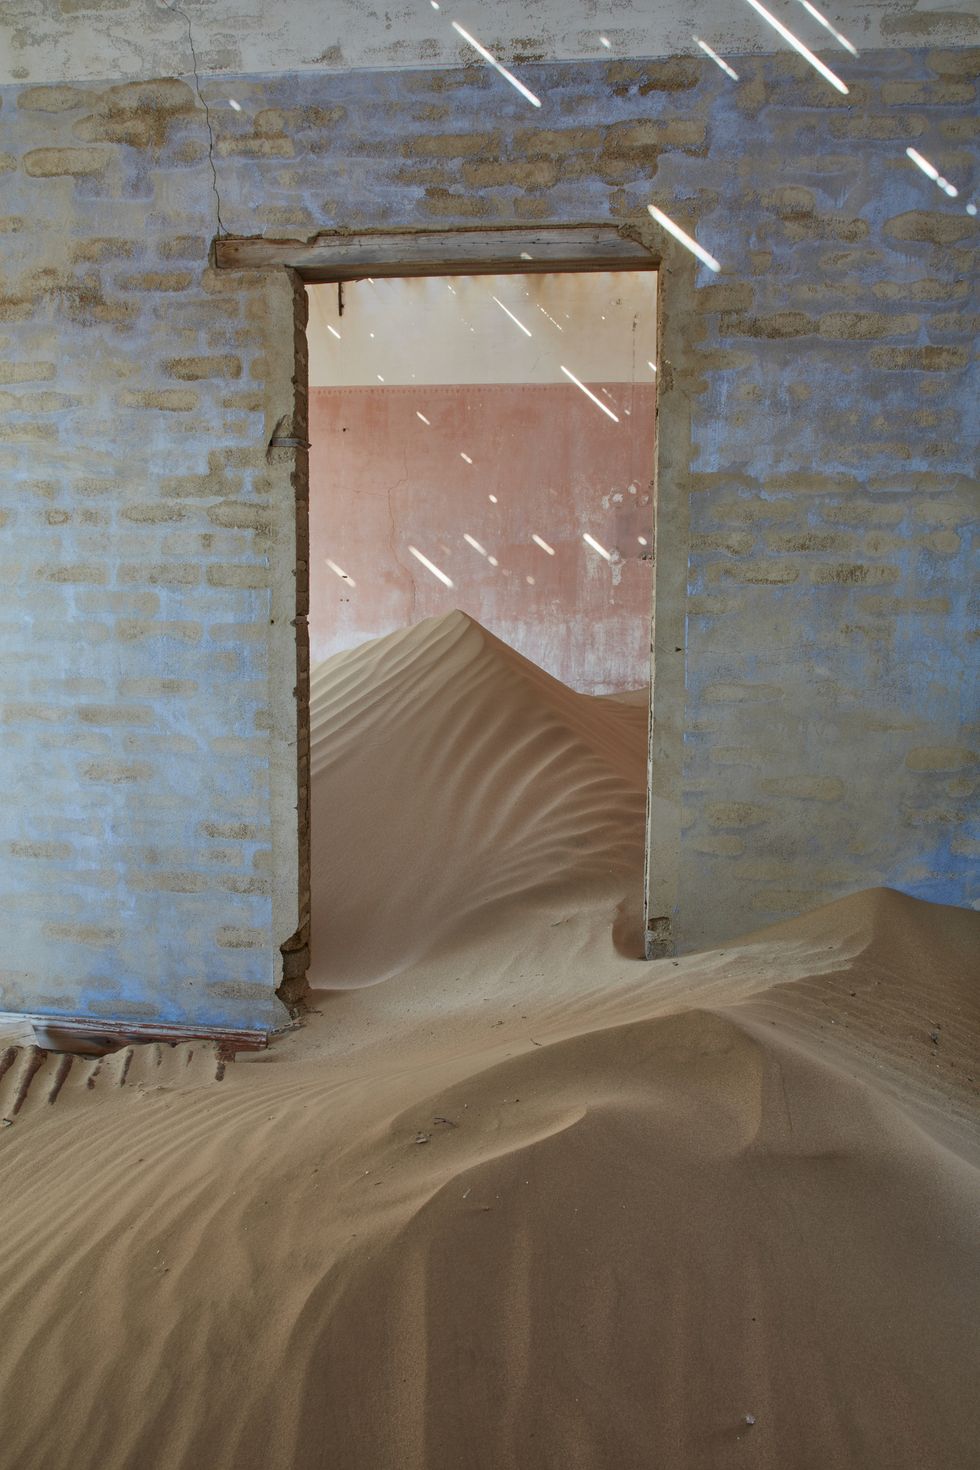 Kolmanskop, Namibia Quang cảnh một căn phòng trong một tòa nhà vô chủ đầy cát. HÌNH ẢNH MINT HÌNH ẢNH RF GETTY Thị trấn này được thành lập trên sa mạc Namib vào năm 1908, sau khi một người đàn ông tìm thấy một viên kim cương trong khu vực, nhưng bị bỏ hoang vào năm 1954 sau khi nguồn tài nguyên cạn kiệt. Những ngôi nhà bị bỏ lại giờ đây đầy cát - một cảnh tượng kỳ lạ, nhưng nổi bật, đáng nhìn.